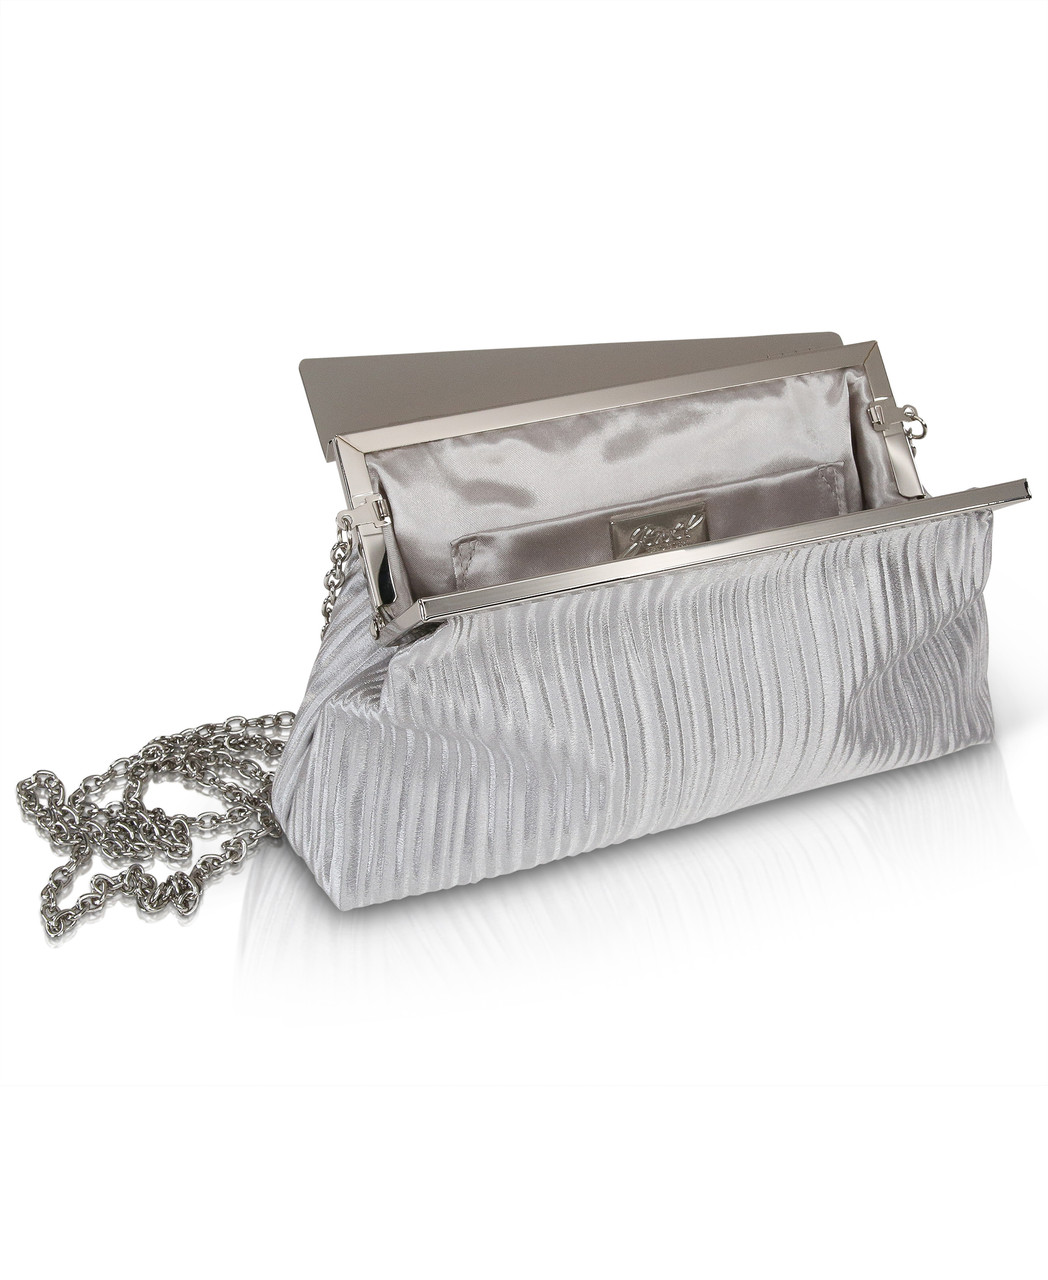 Jewel by Badgley Mischka Katie Crystal Mini Box Clutch Bag with